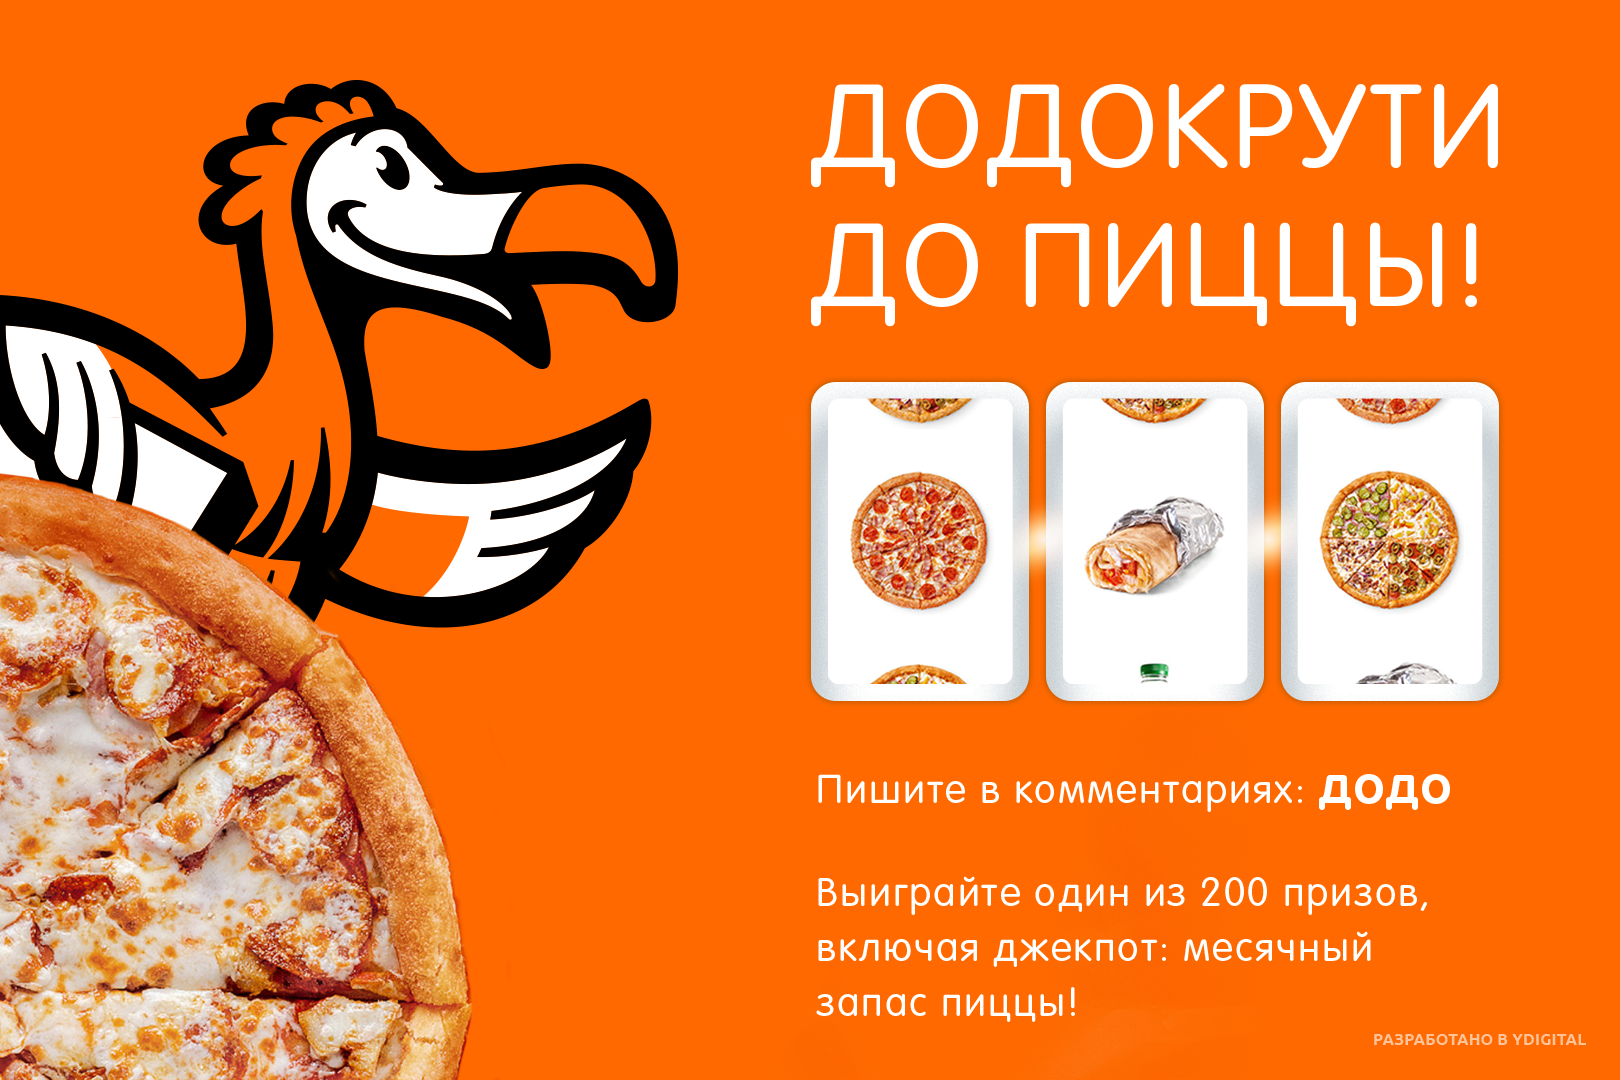 Додо пицца доставка час. Додо пицца реклама. Рекламная листовка Додо пицца. Додо пицца картинки. Баннеры рекламные Додо пиццерии.